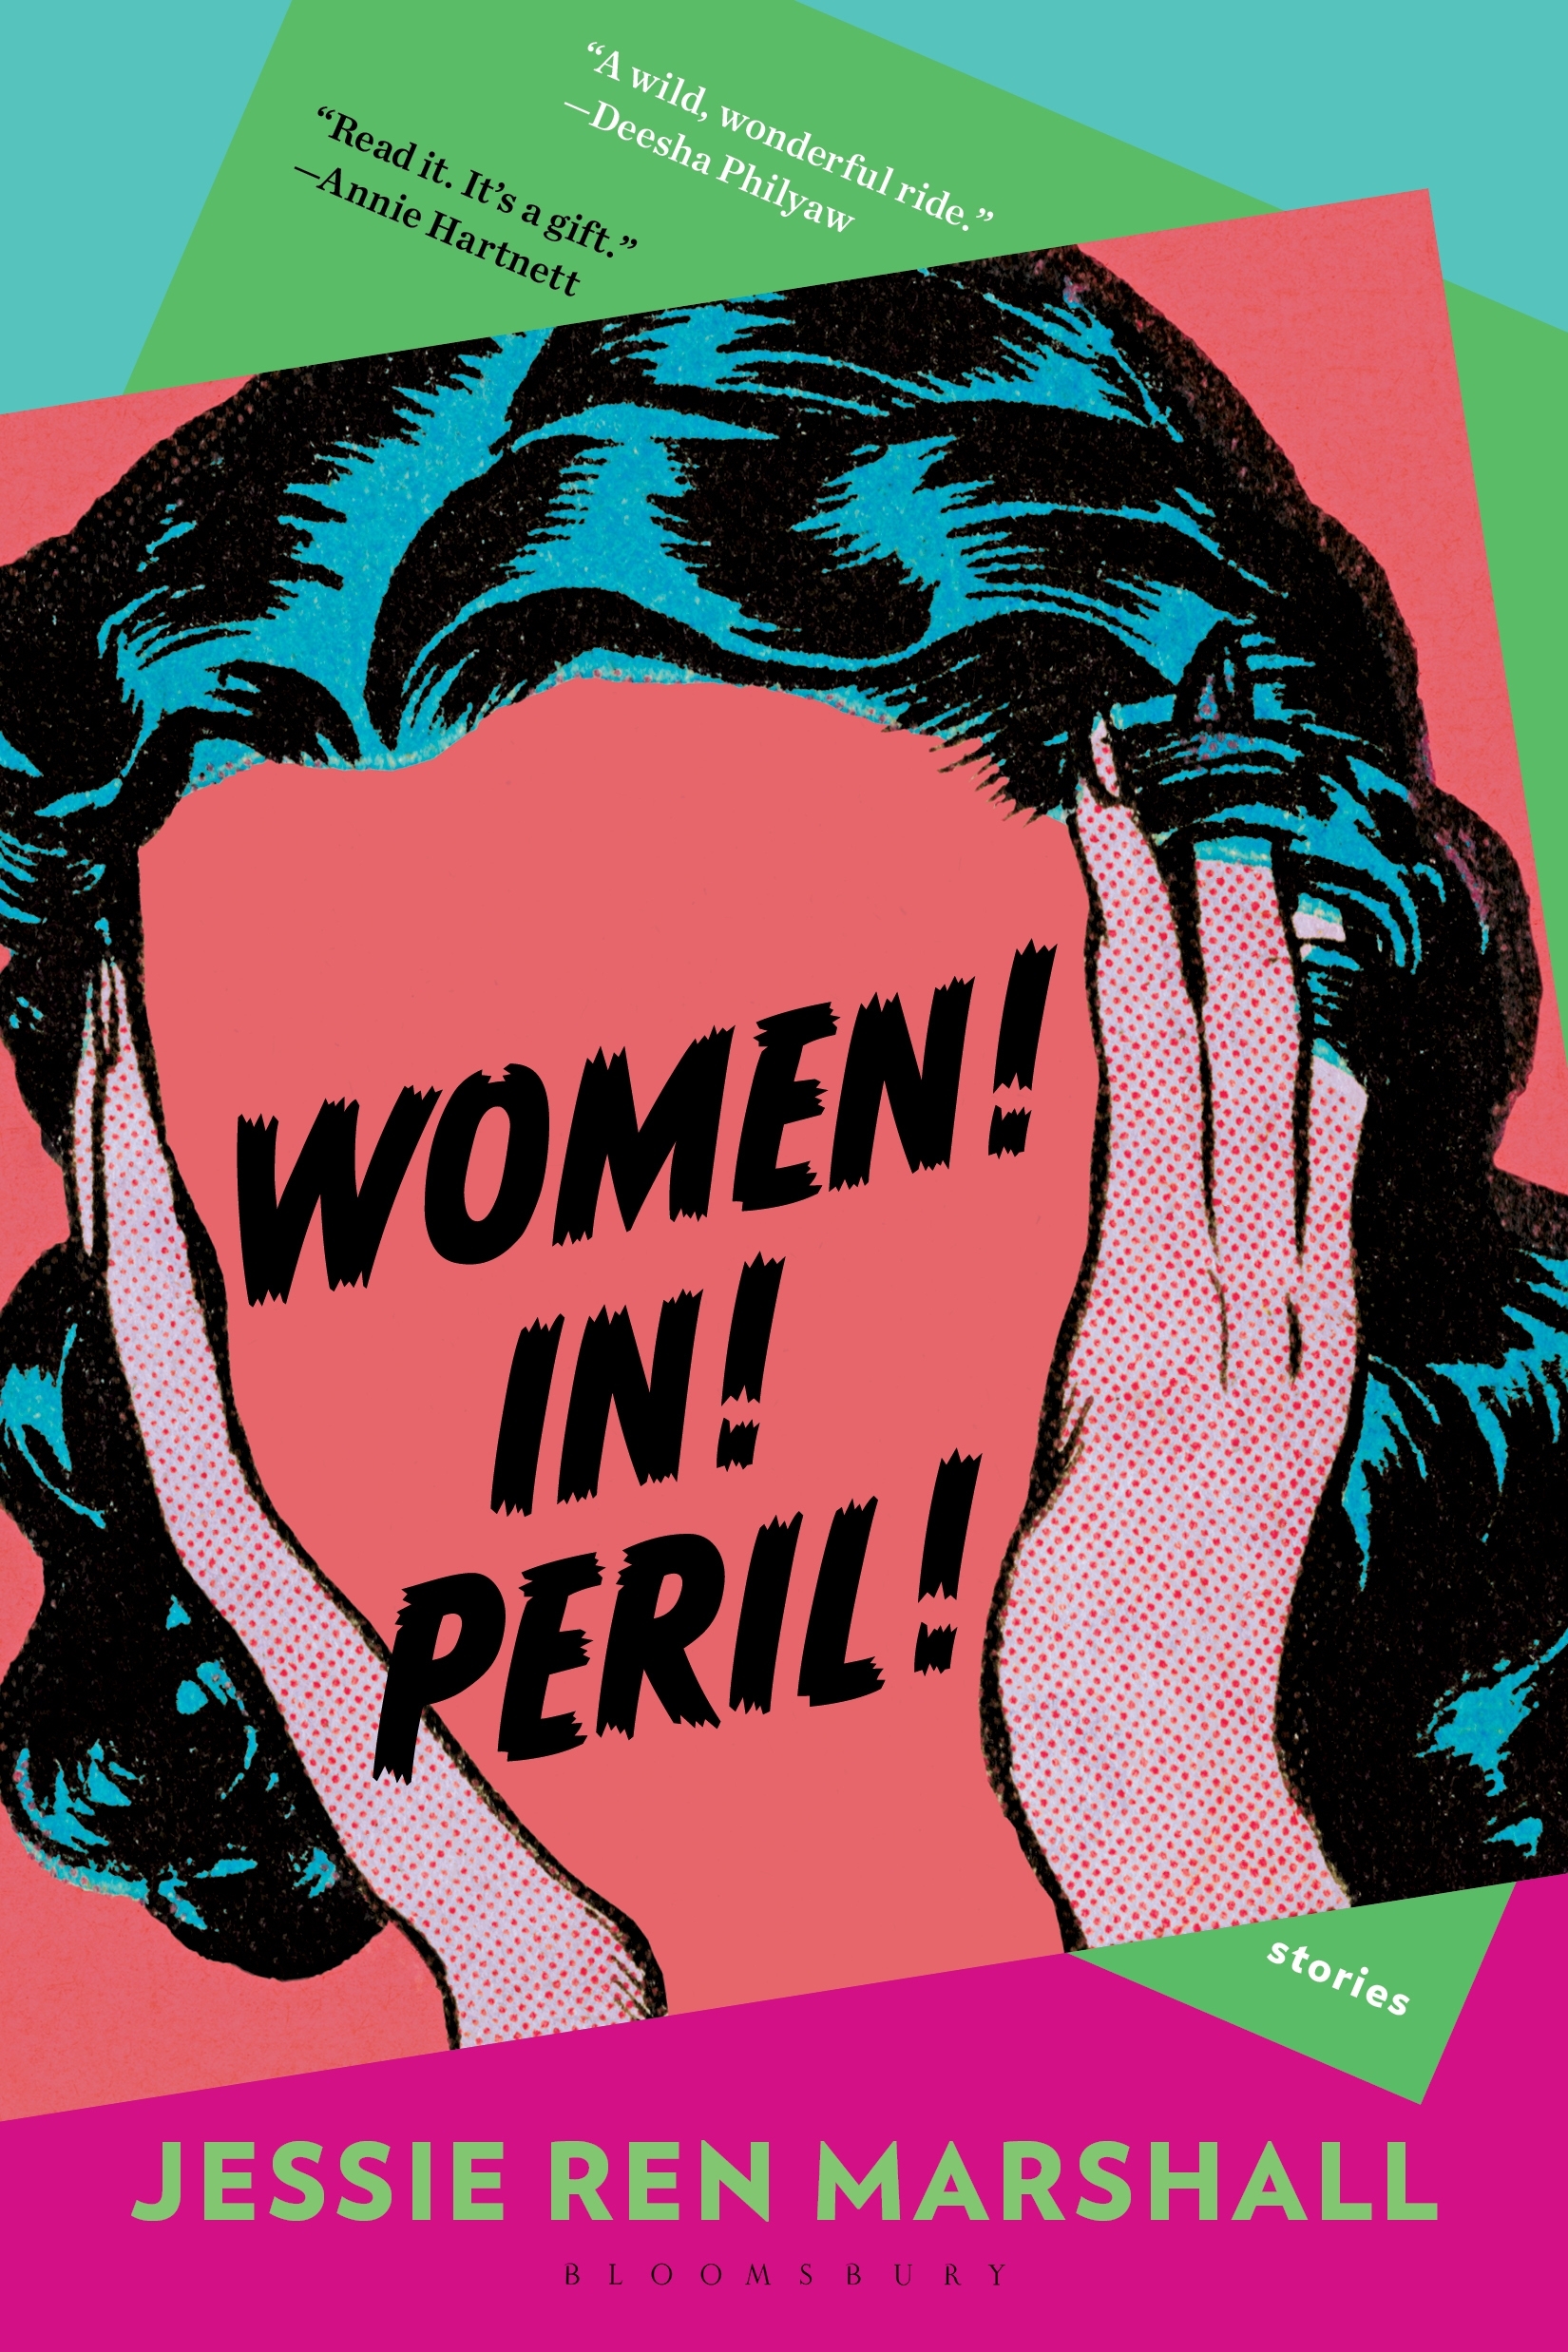 Women! In! Peril! by Jessie Ren Marshall